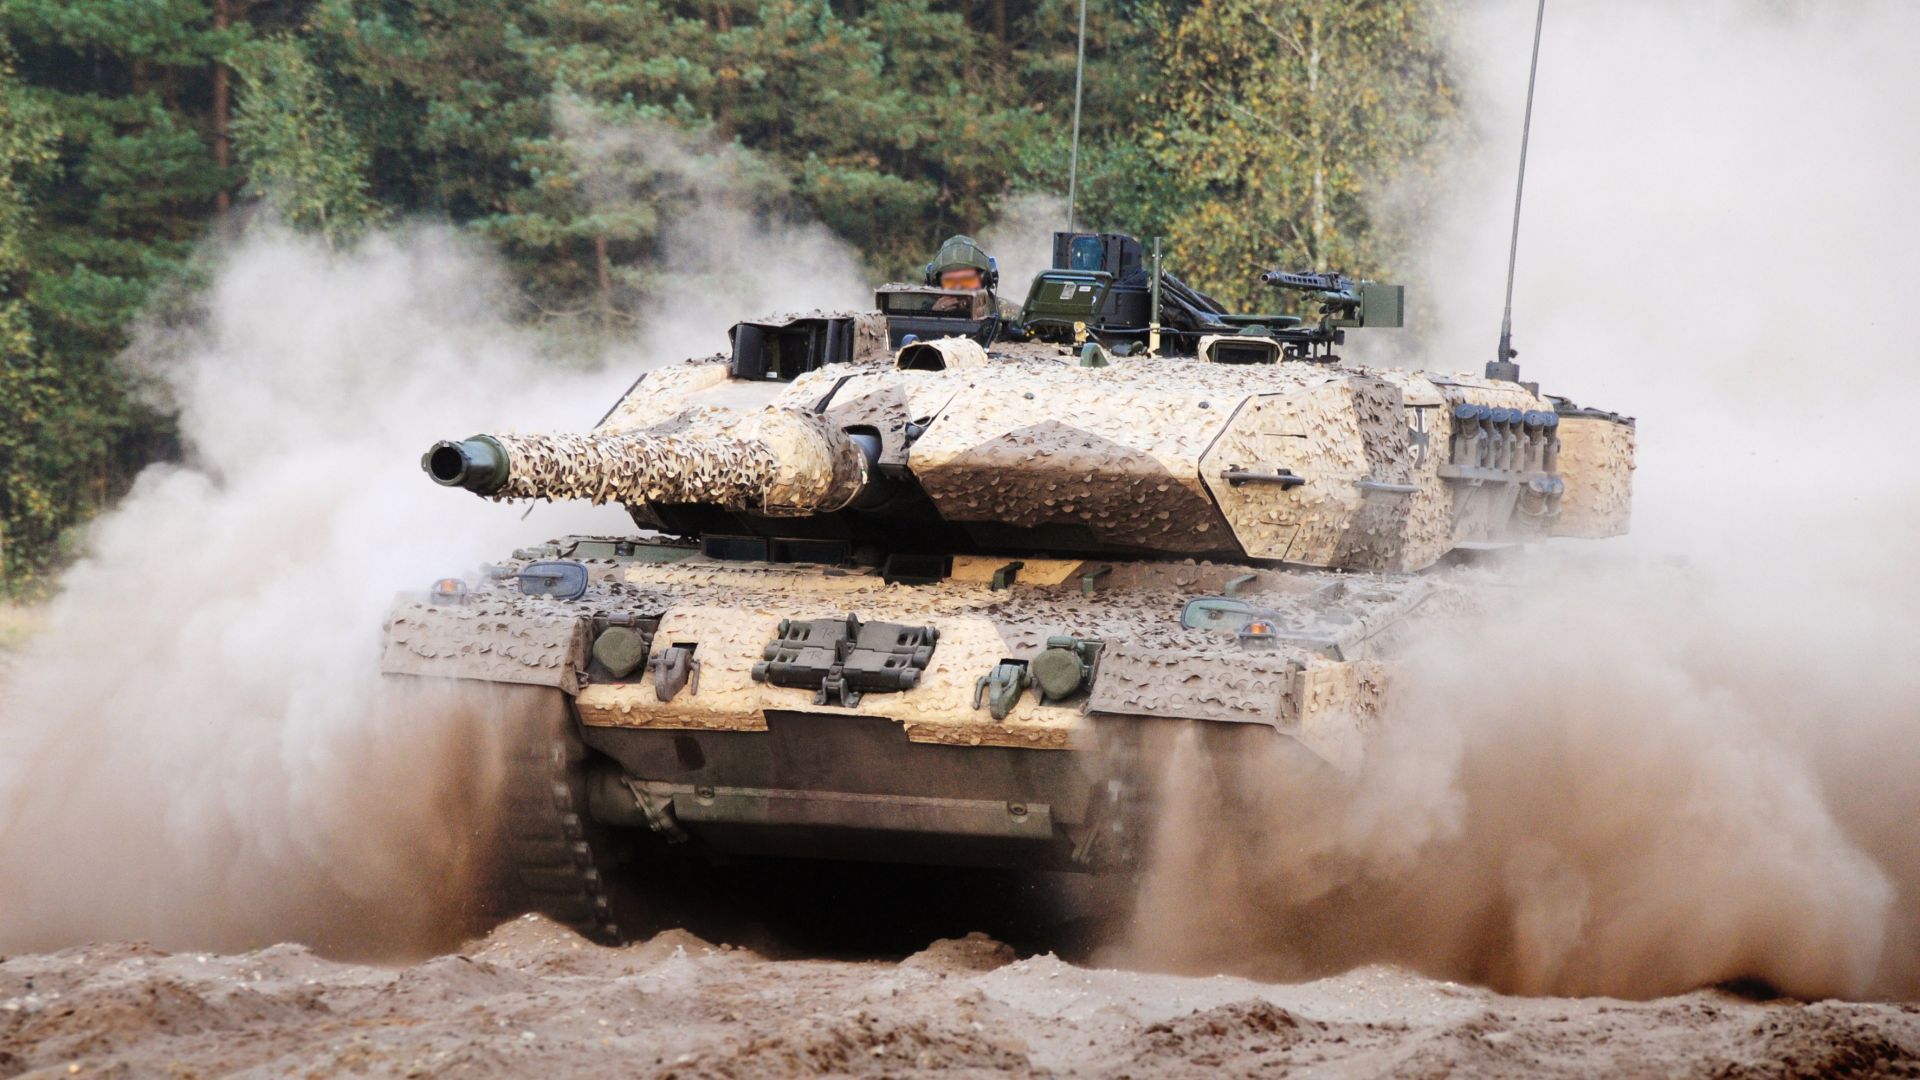 Леопард 2а7, танк, Армия Германии, Leopard 2A7, tank, German Army (horizontal)